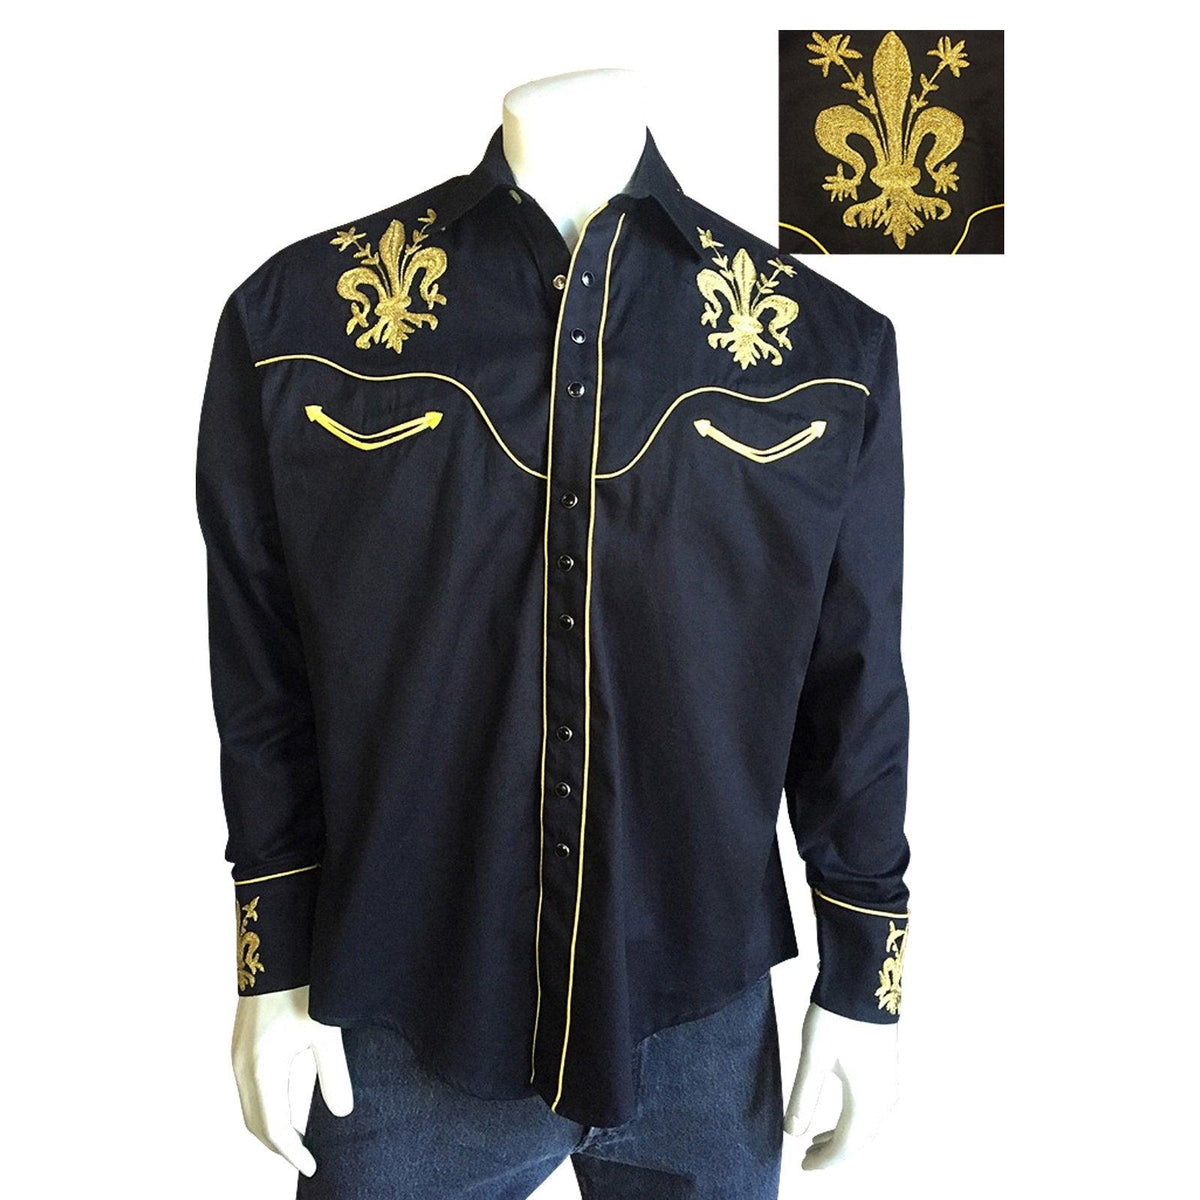 Men's Fleur-de-Lis Embroidered Black Western Shirt - Flyclothing LLC